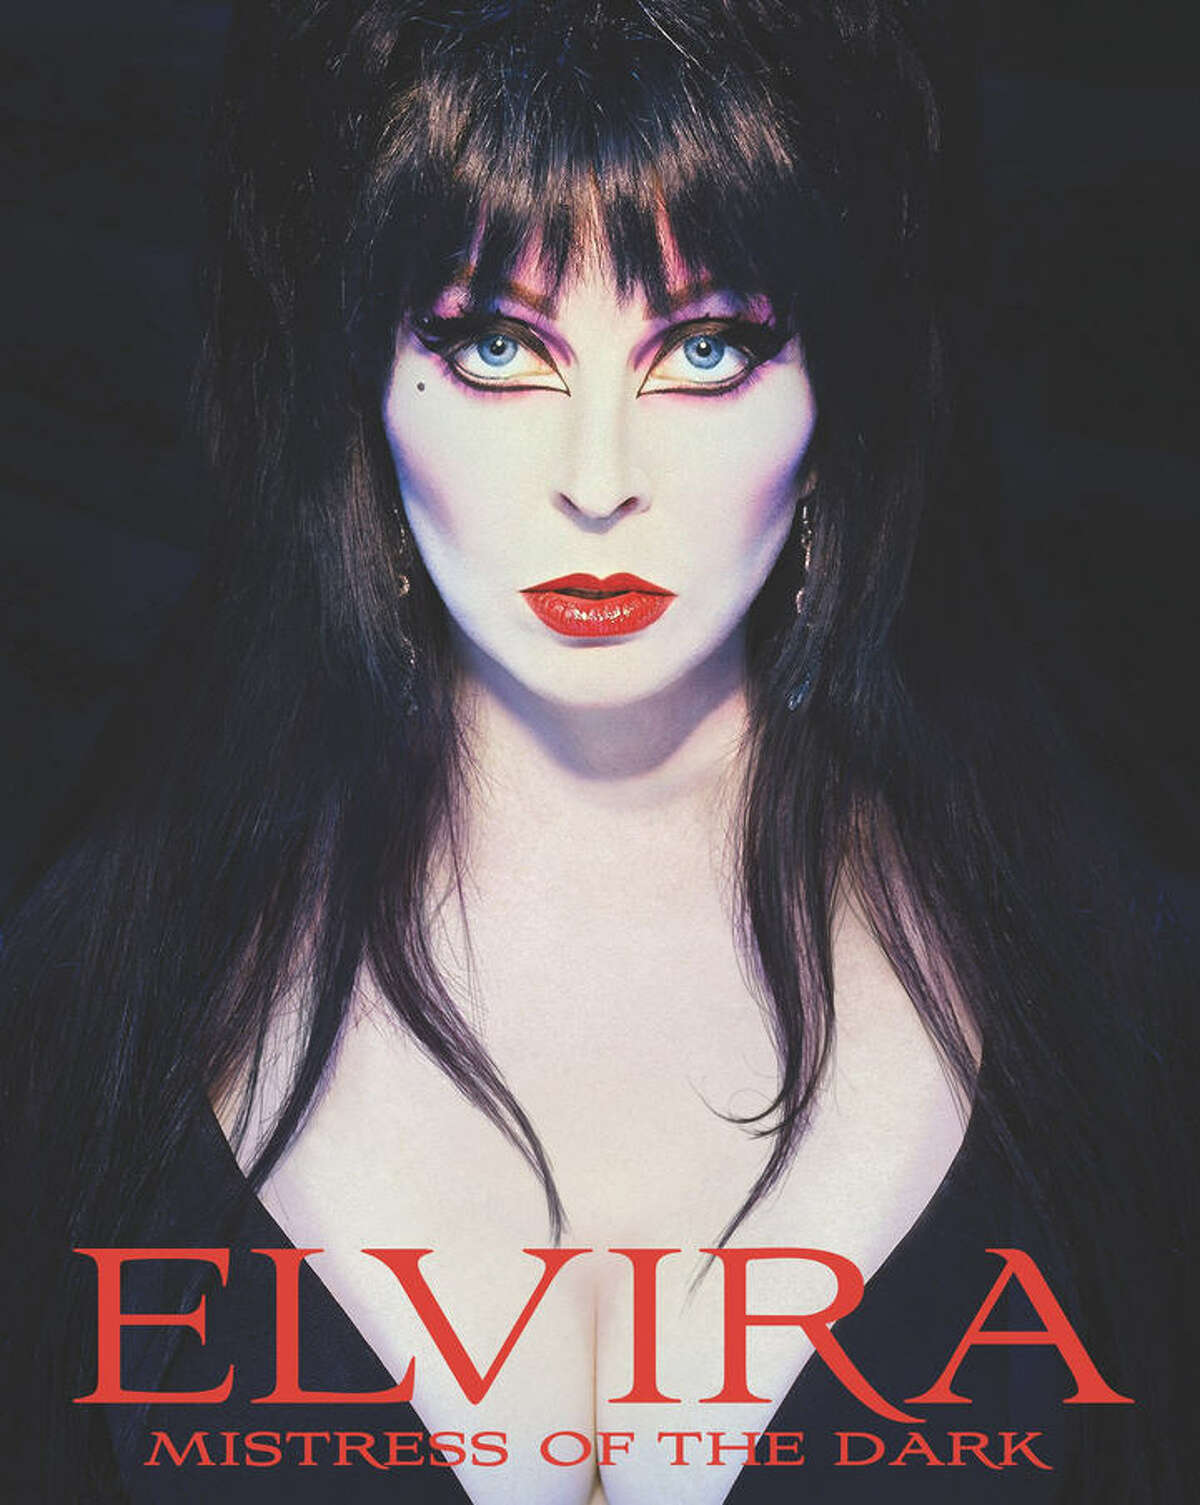 Celebrating 35 years of Halloween queen Elvira, Mistress of the Dark